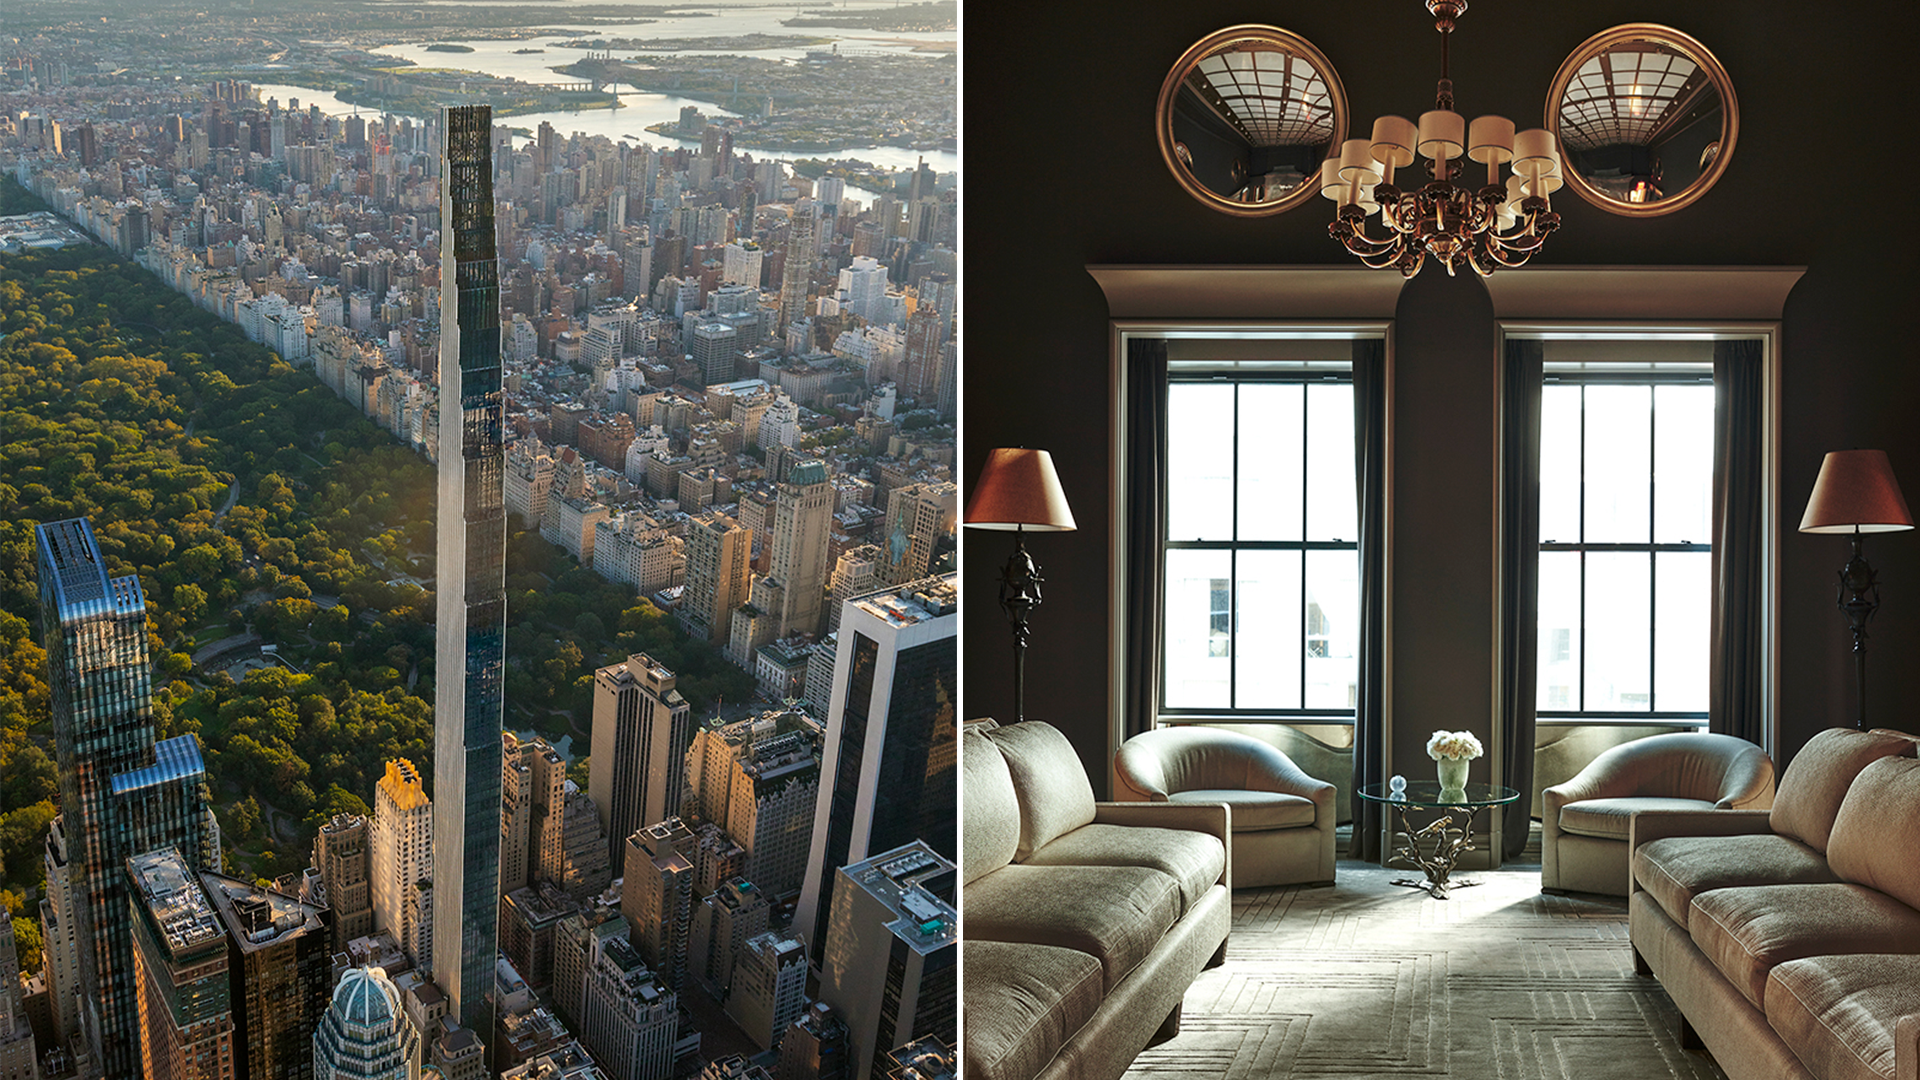 El rascacielos de 91 pisos, también es conocido como 111 West 57th Street
Gentileza William Sofield / SHoP Architects